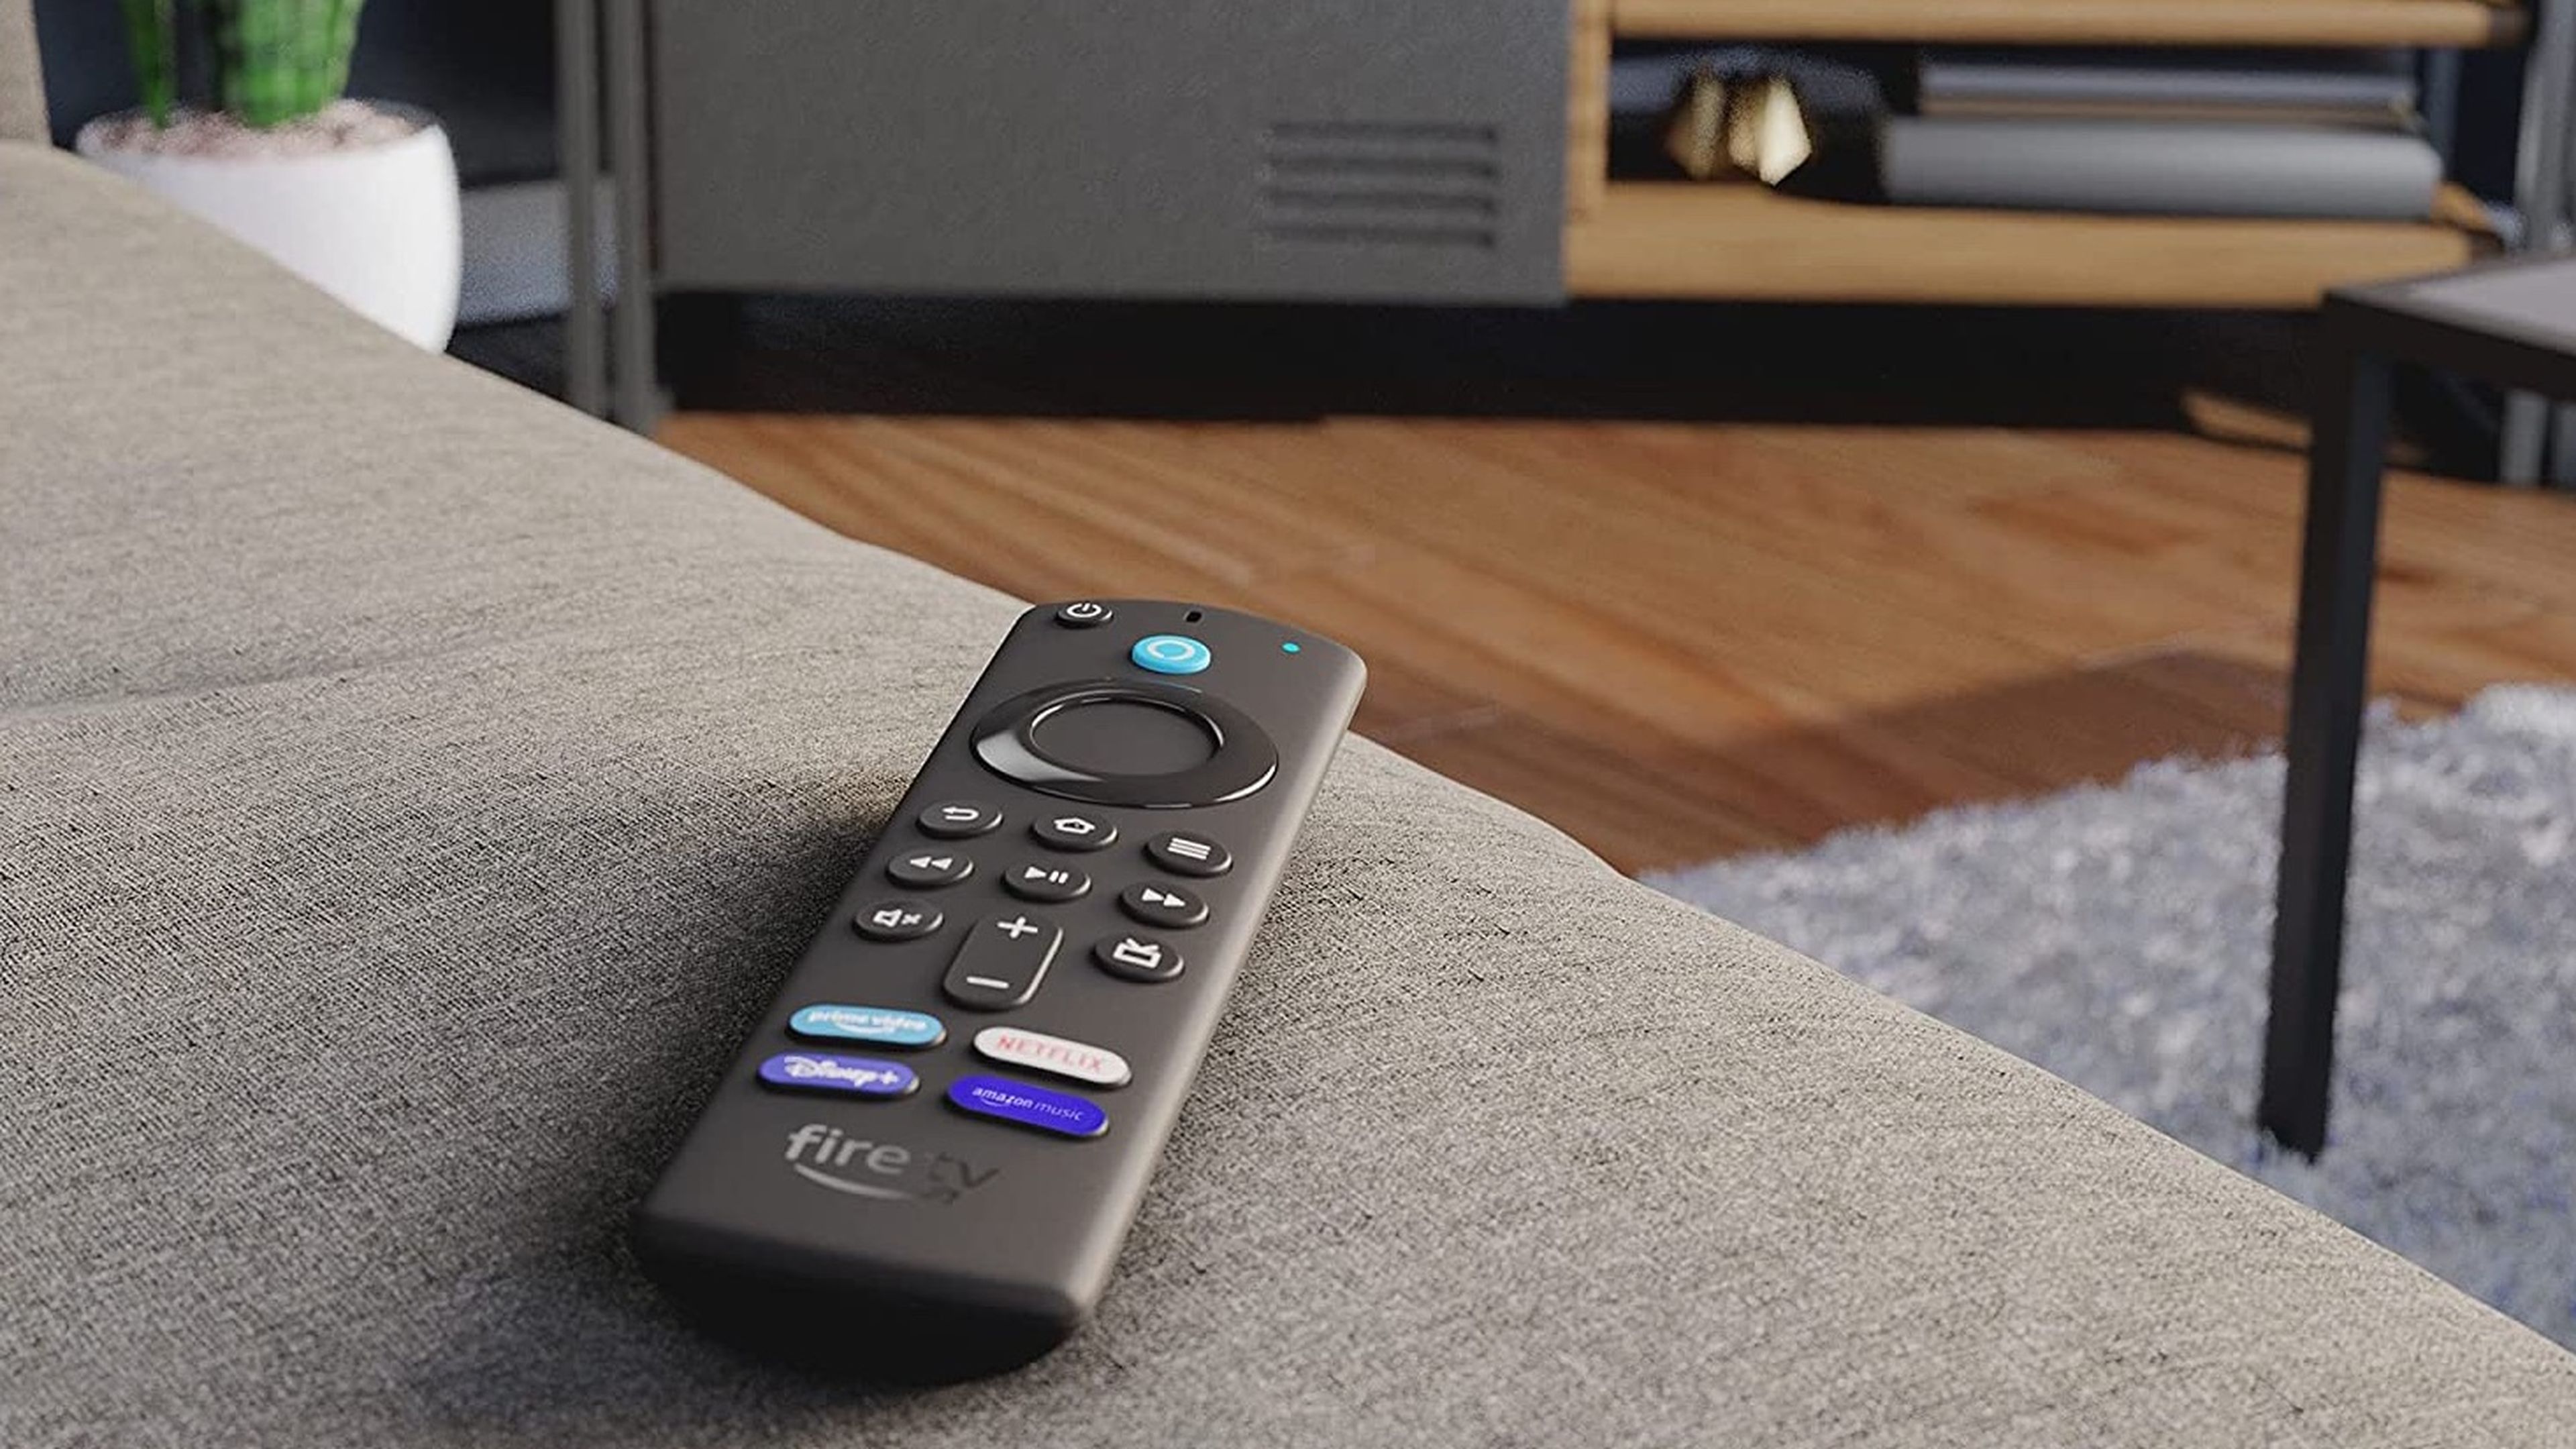 Fire Tv Stick Lite 2da Generación con mando por voz Alexa